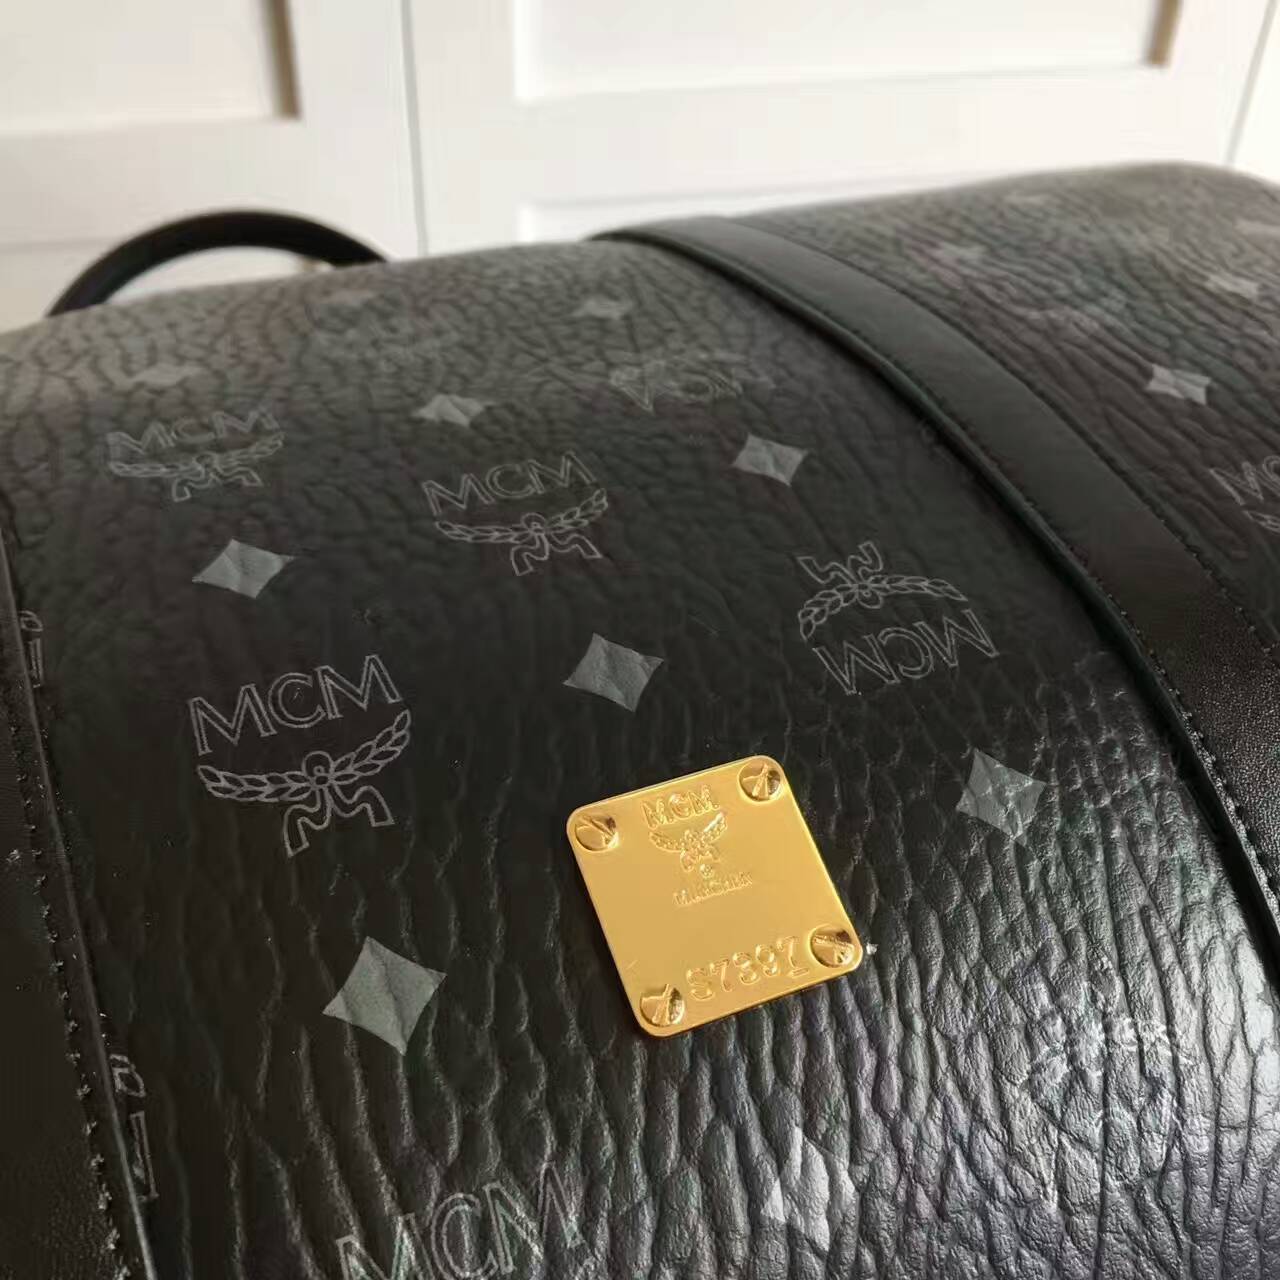 MCM Travel Bag 1:1 Quality-002